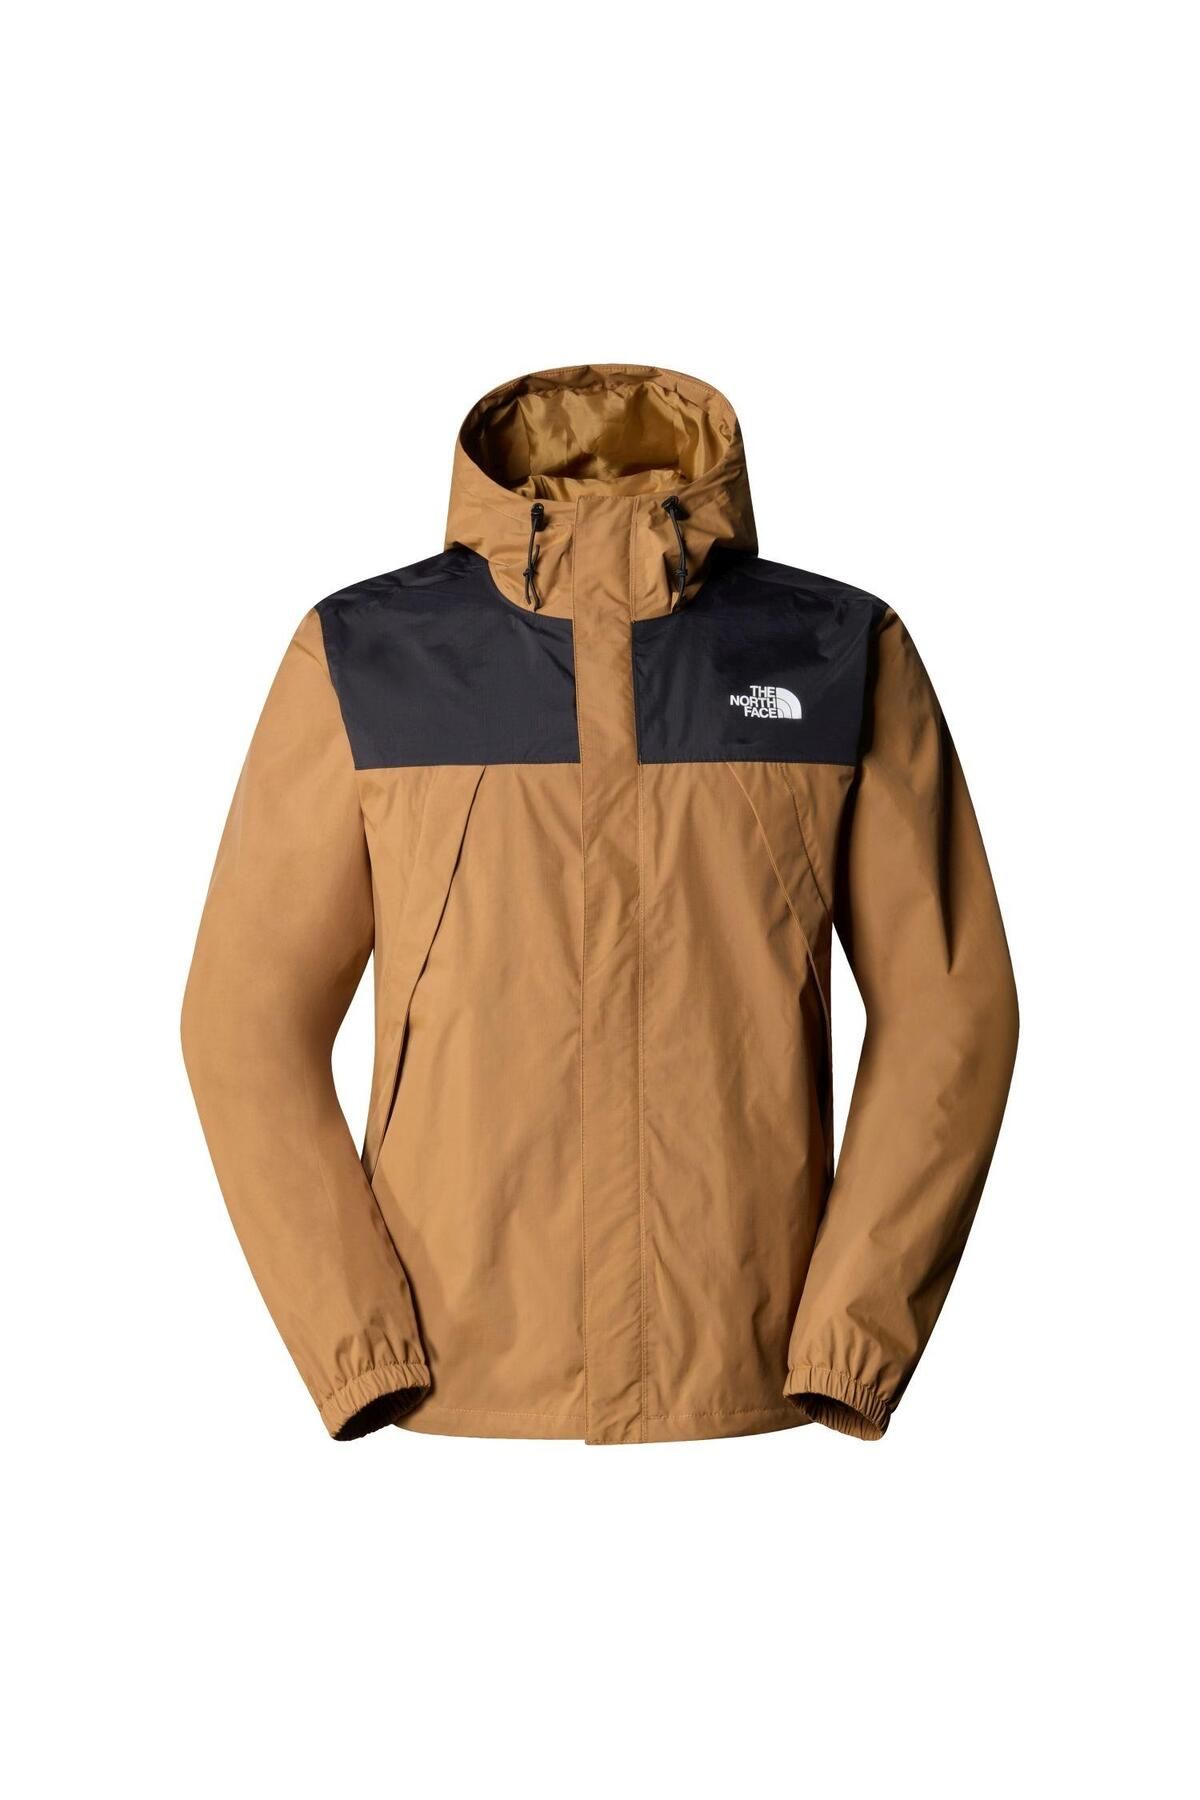 The North Face M Antora Jacket Erkek Ceket Nf0a7qeyyw21 Kahverengi-s